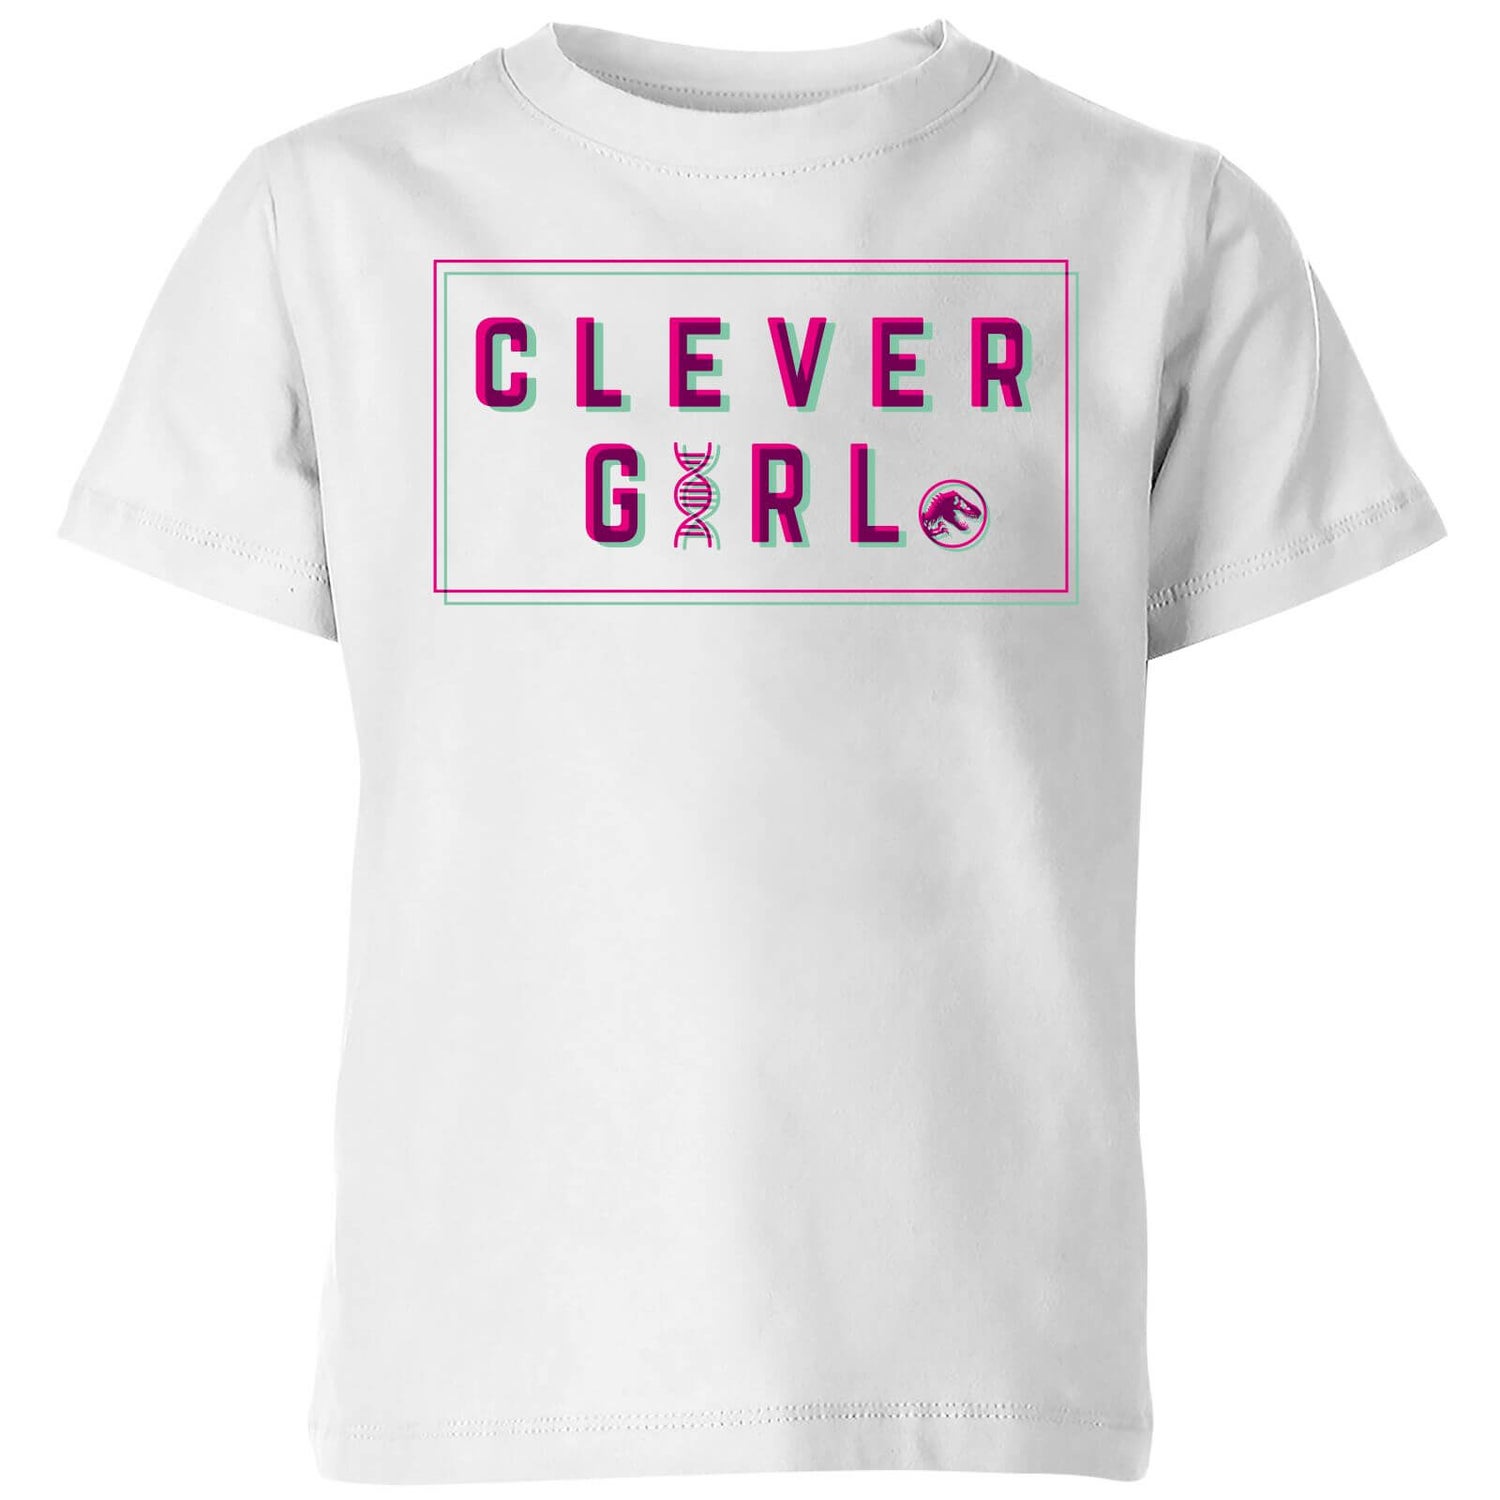 Jurassic Park Clever Girl Kids' T-Shirt - White